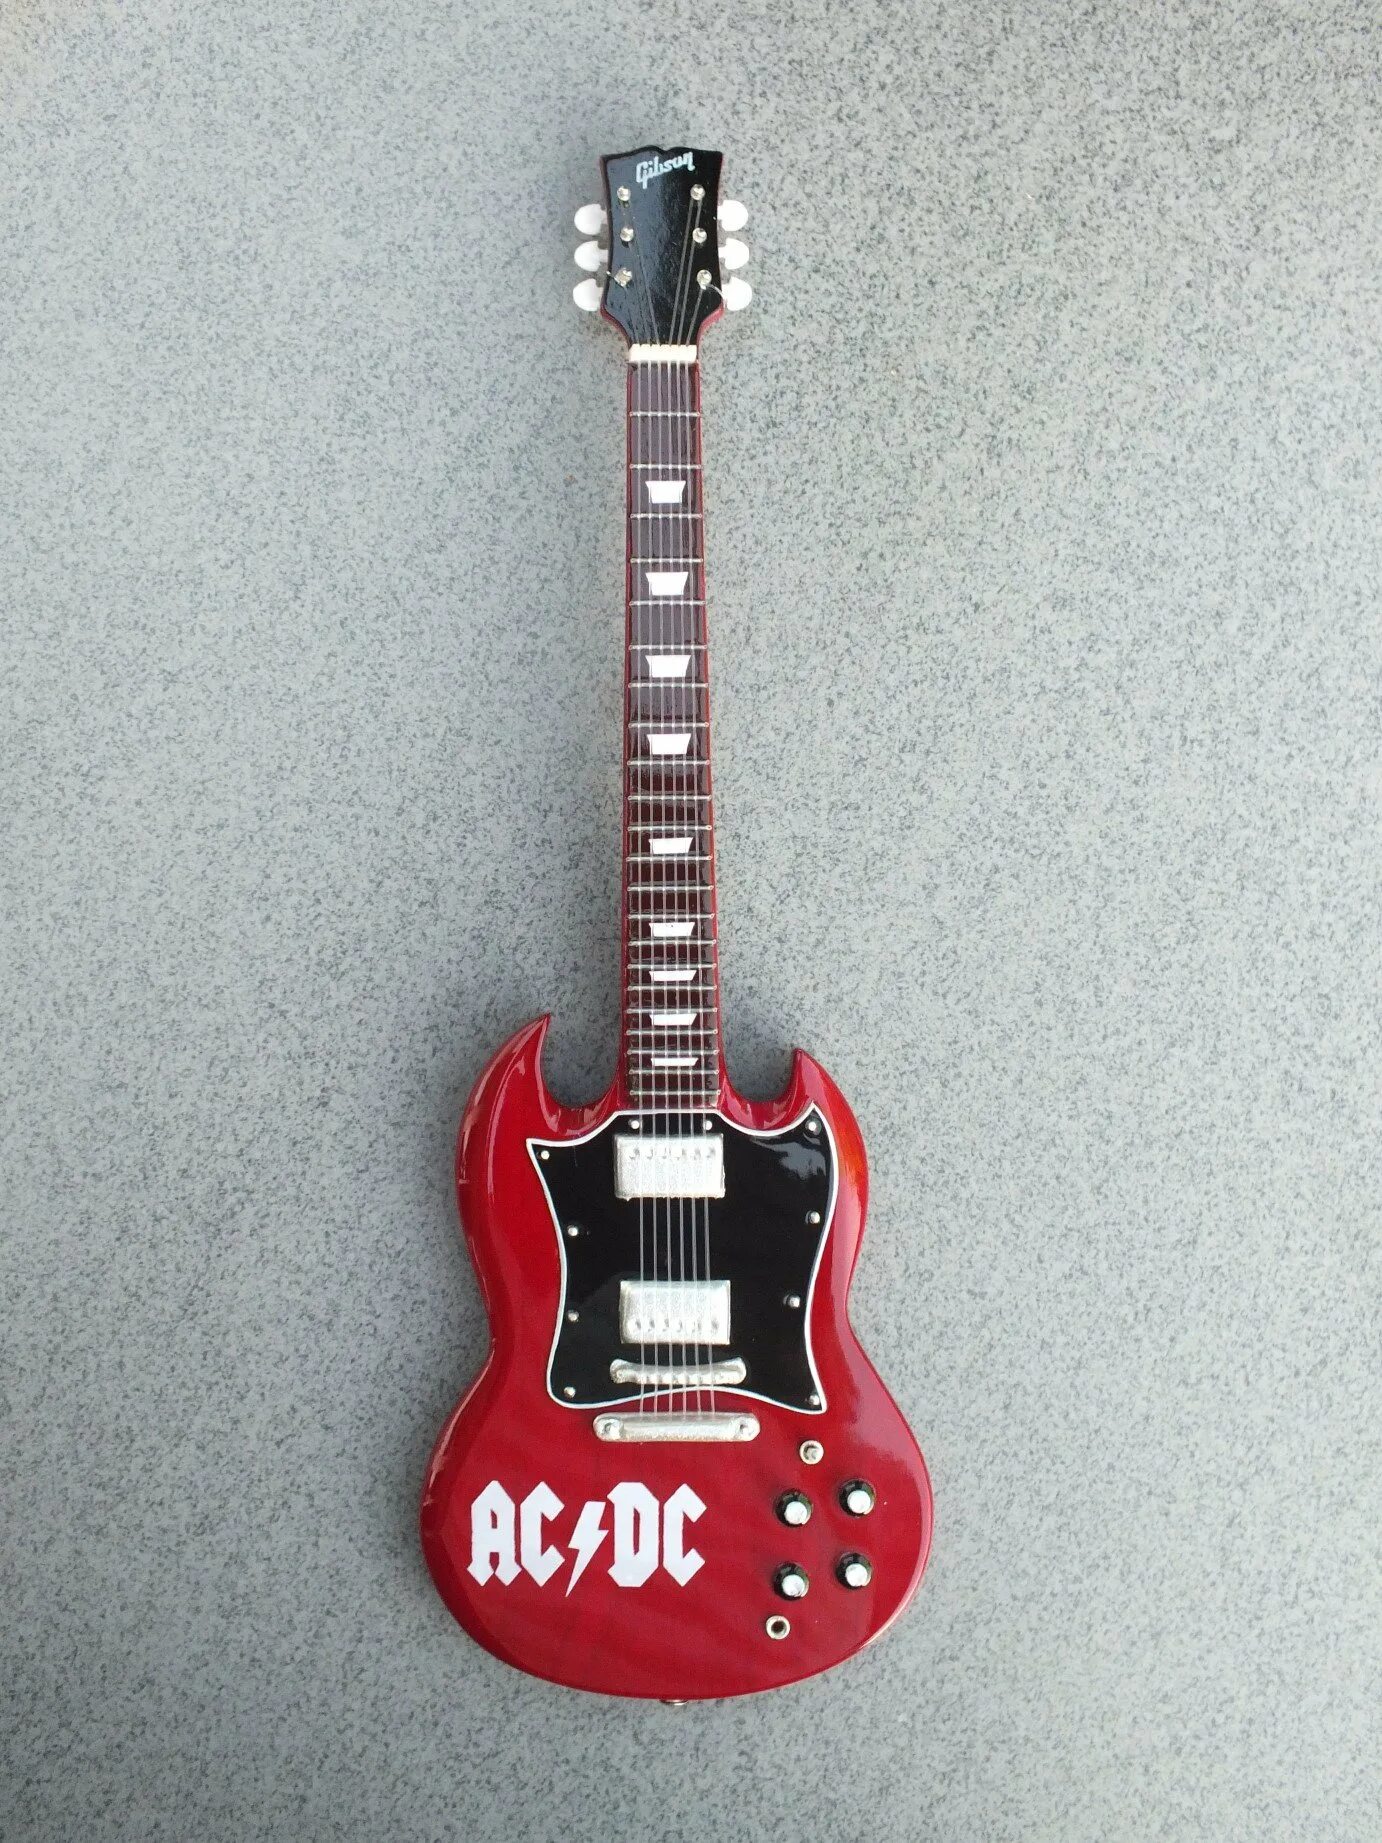 Гитара Гибсон AC/DC. Angus young AC/DC гитара. Guitar Gibson SG Standard Angus young AC DC. Электрогитара Gibson Angus young SG.